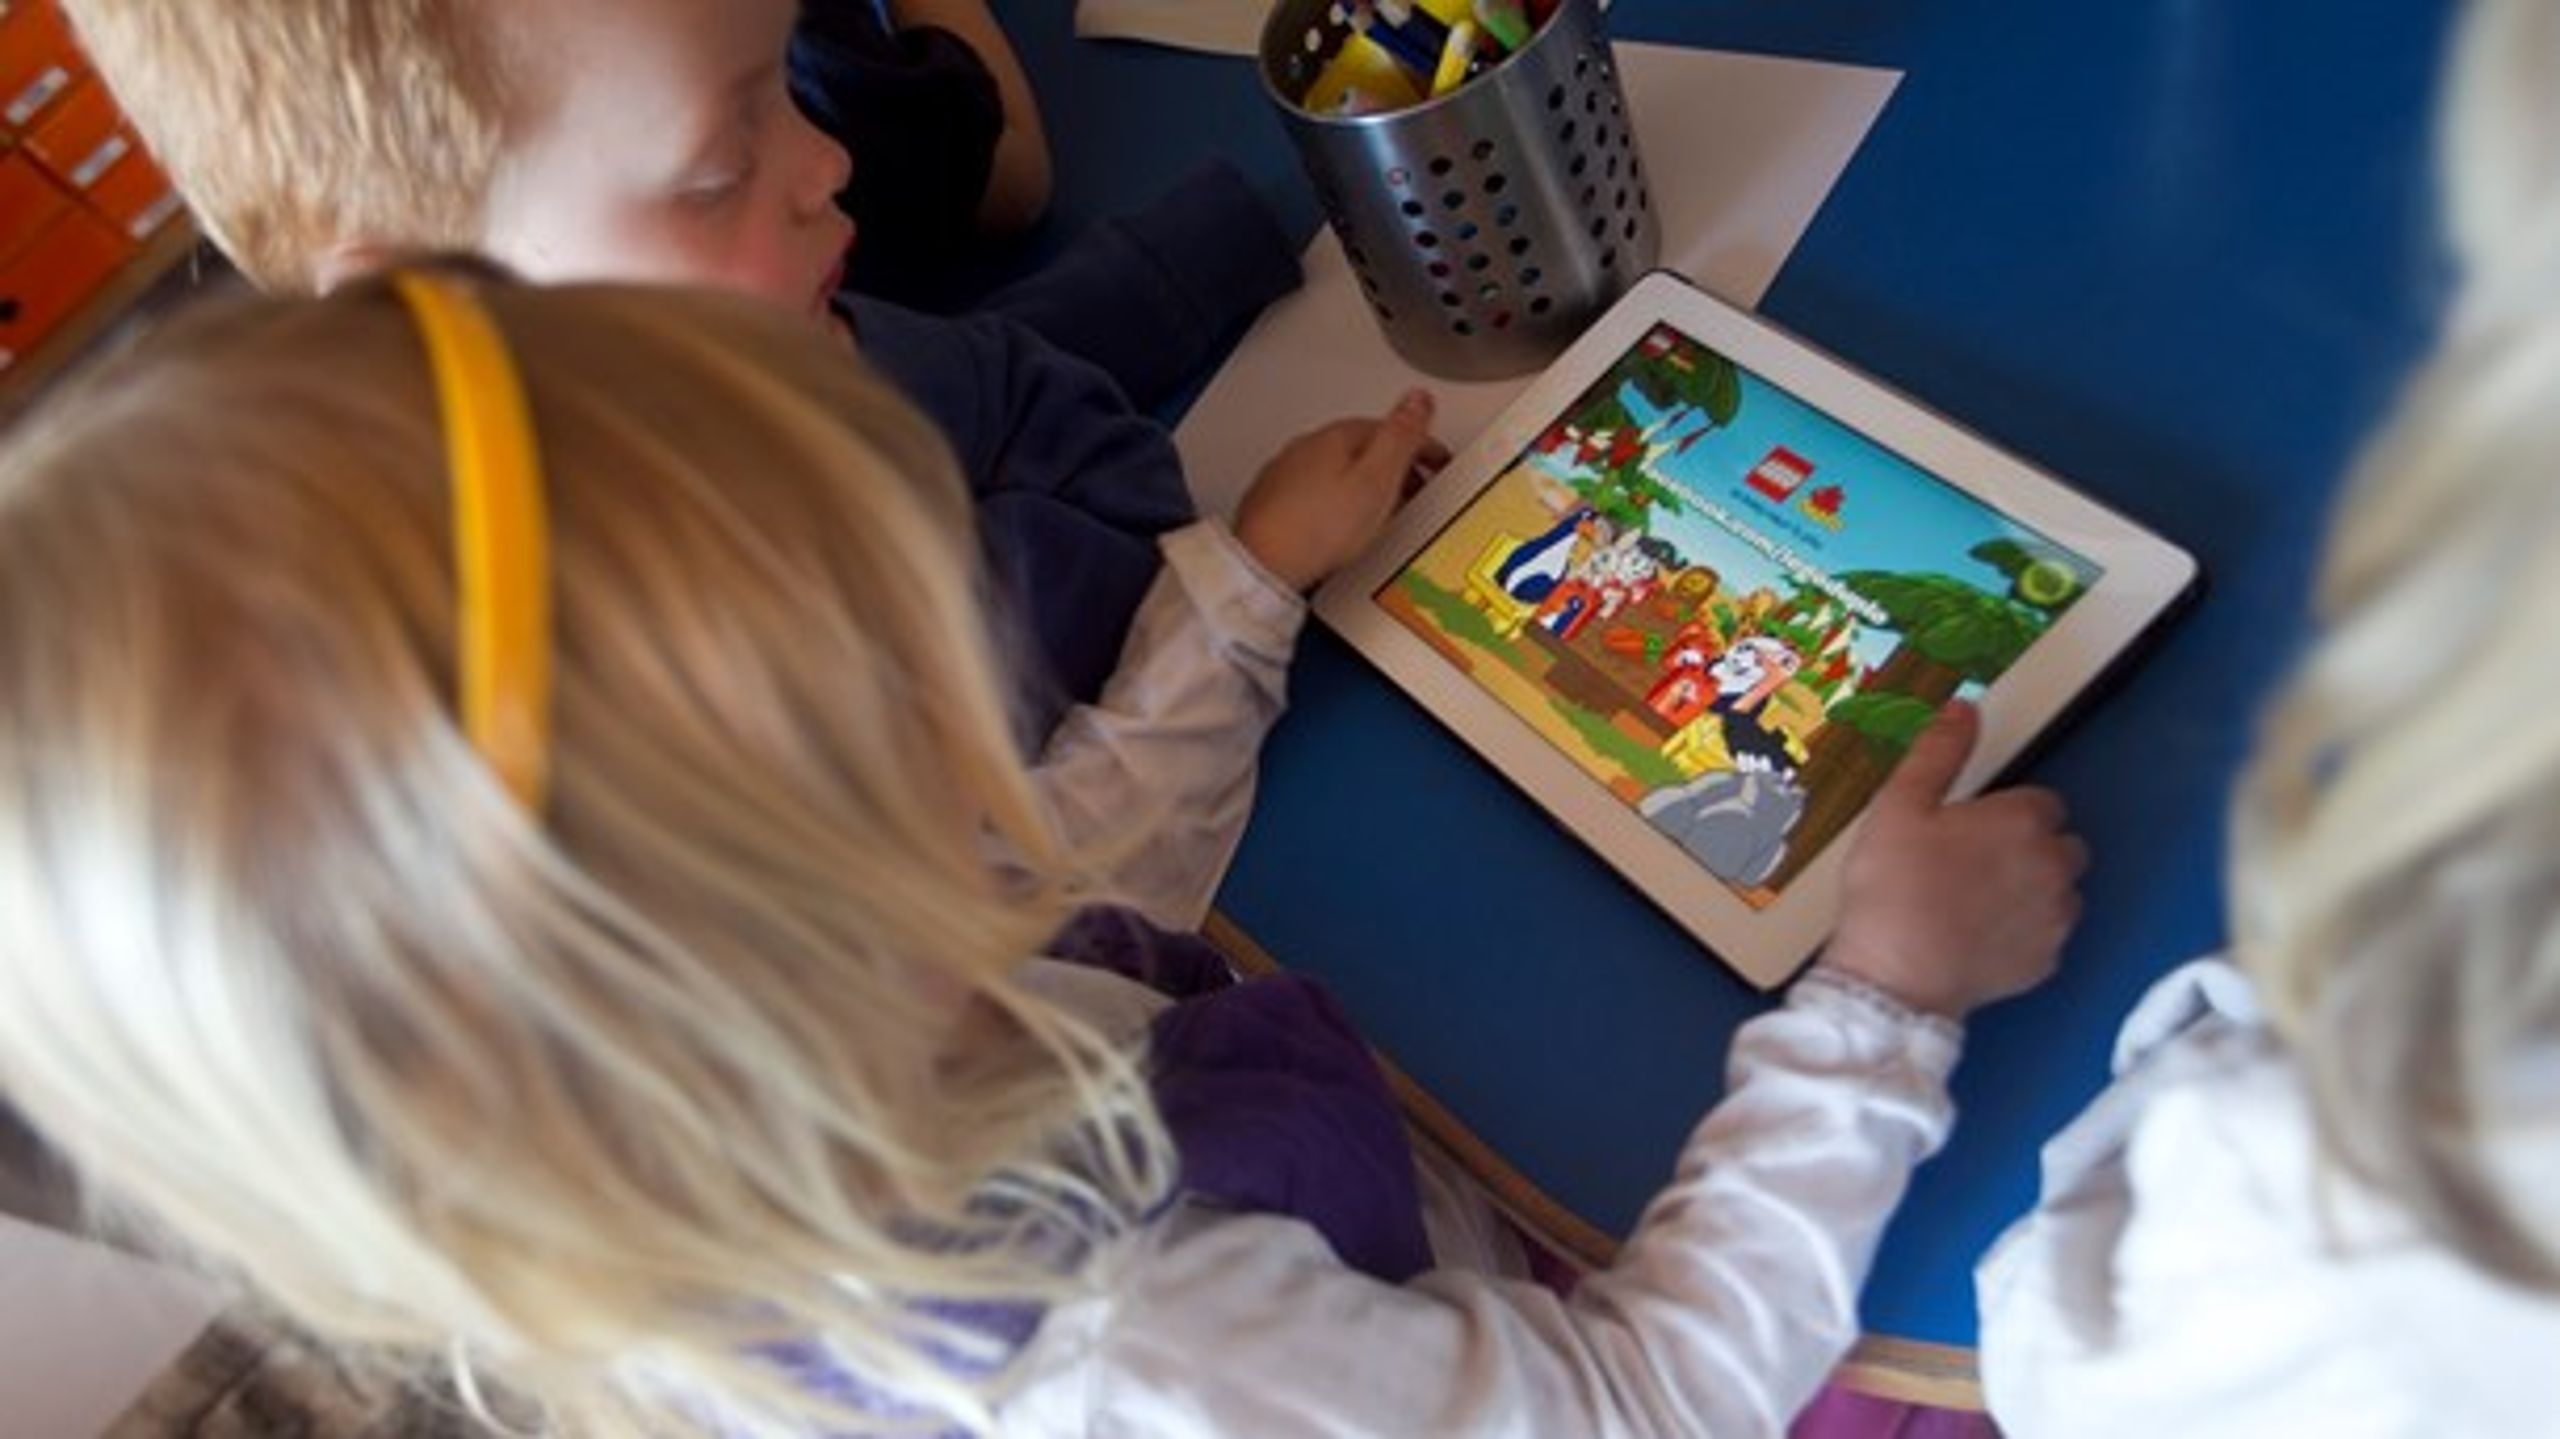 Det lave faglige niveau ses blandt andet ved en ukritisk brug af iPads. Der sidder tre-fire børn uden en voksen og kigger på billeder af dyr i et sprogløst samvær, skriver Niels Hansen.